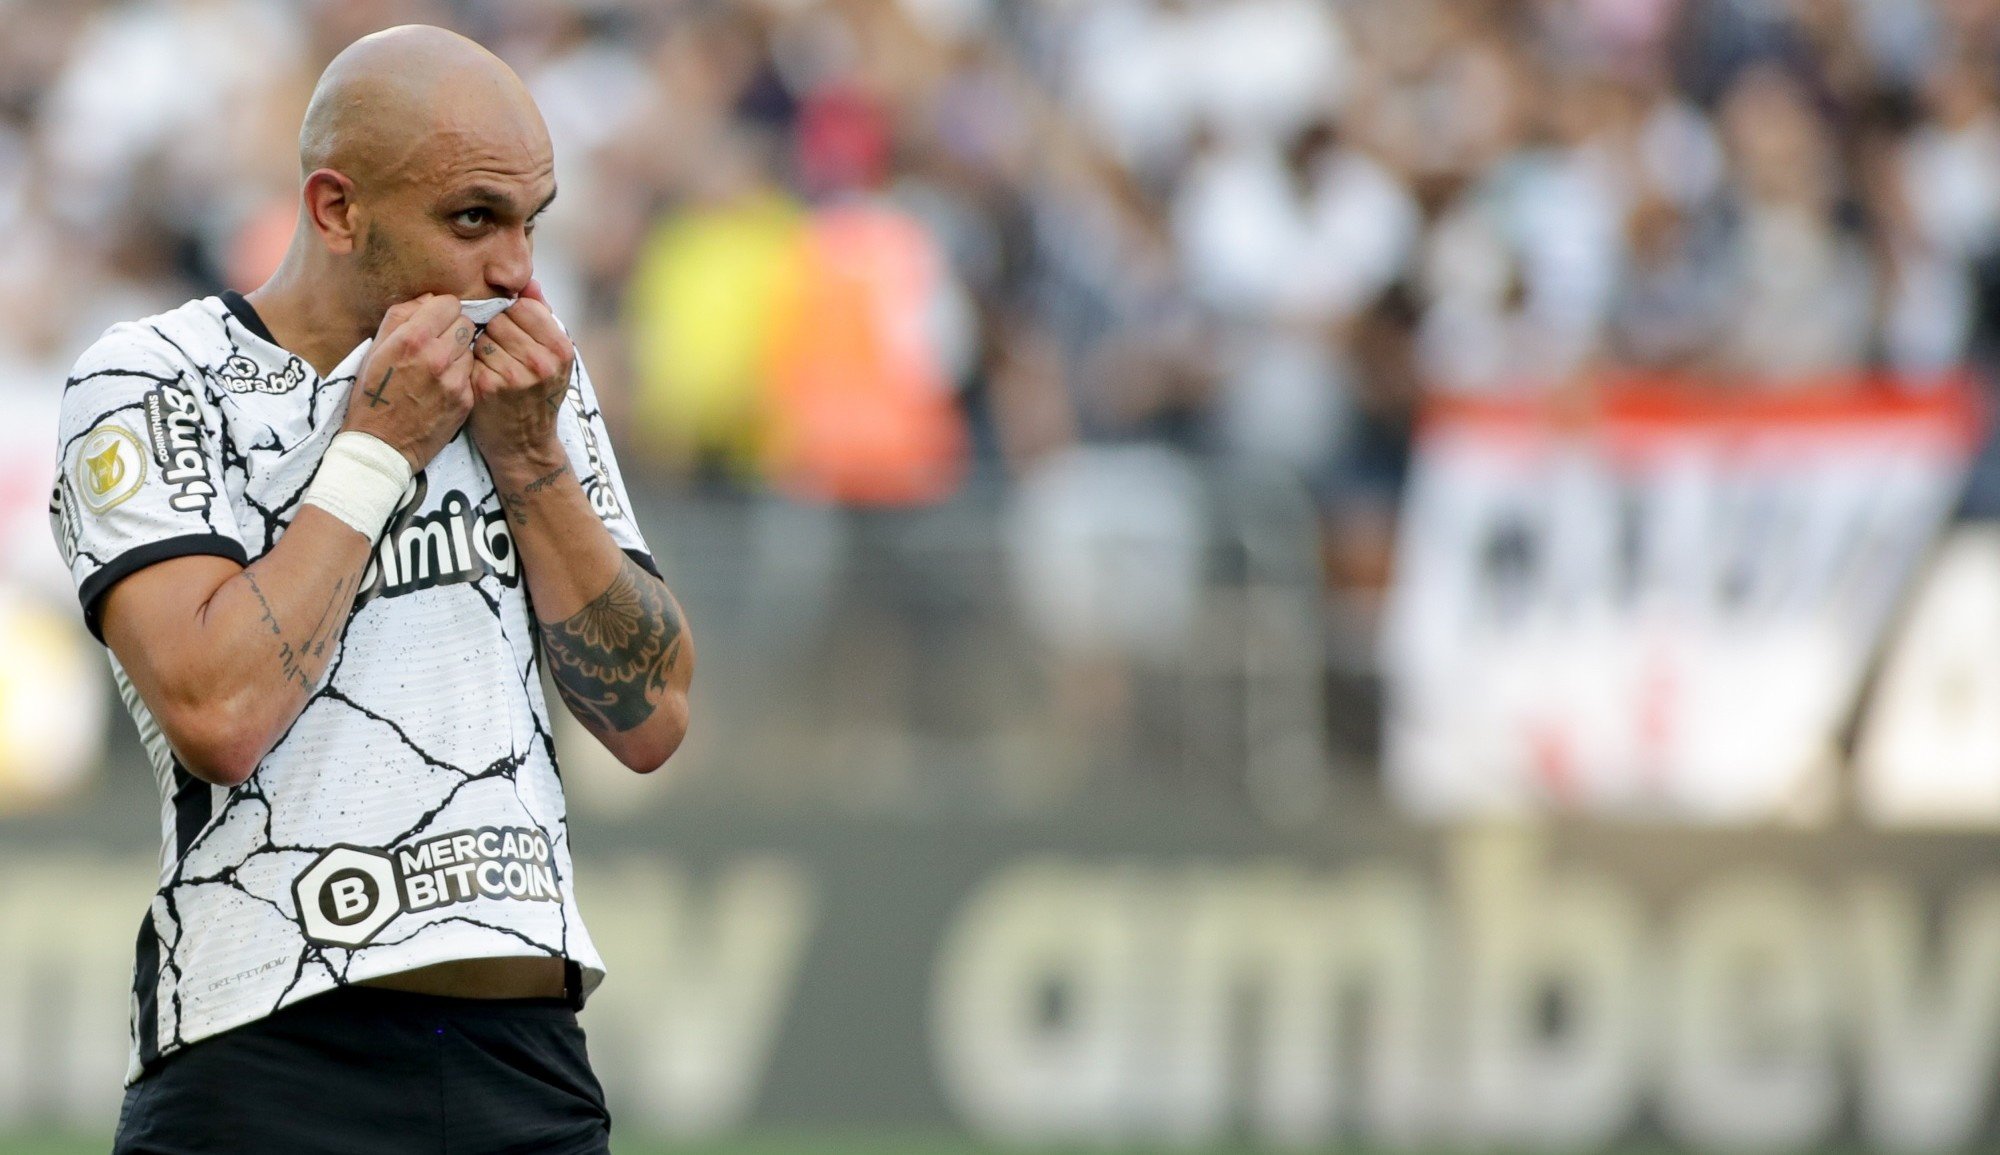 Fábio Santos chega ao último ano de carreira; confira outros nomes que se despediram do futebol no Timão